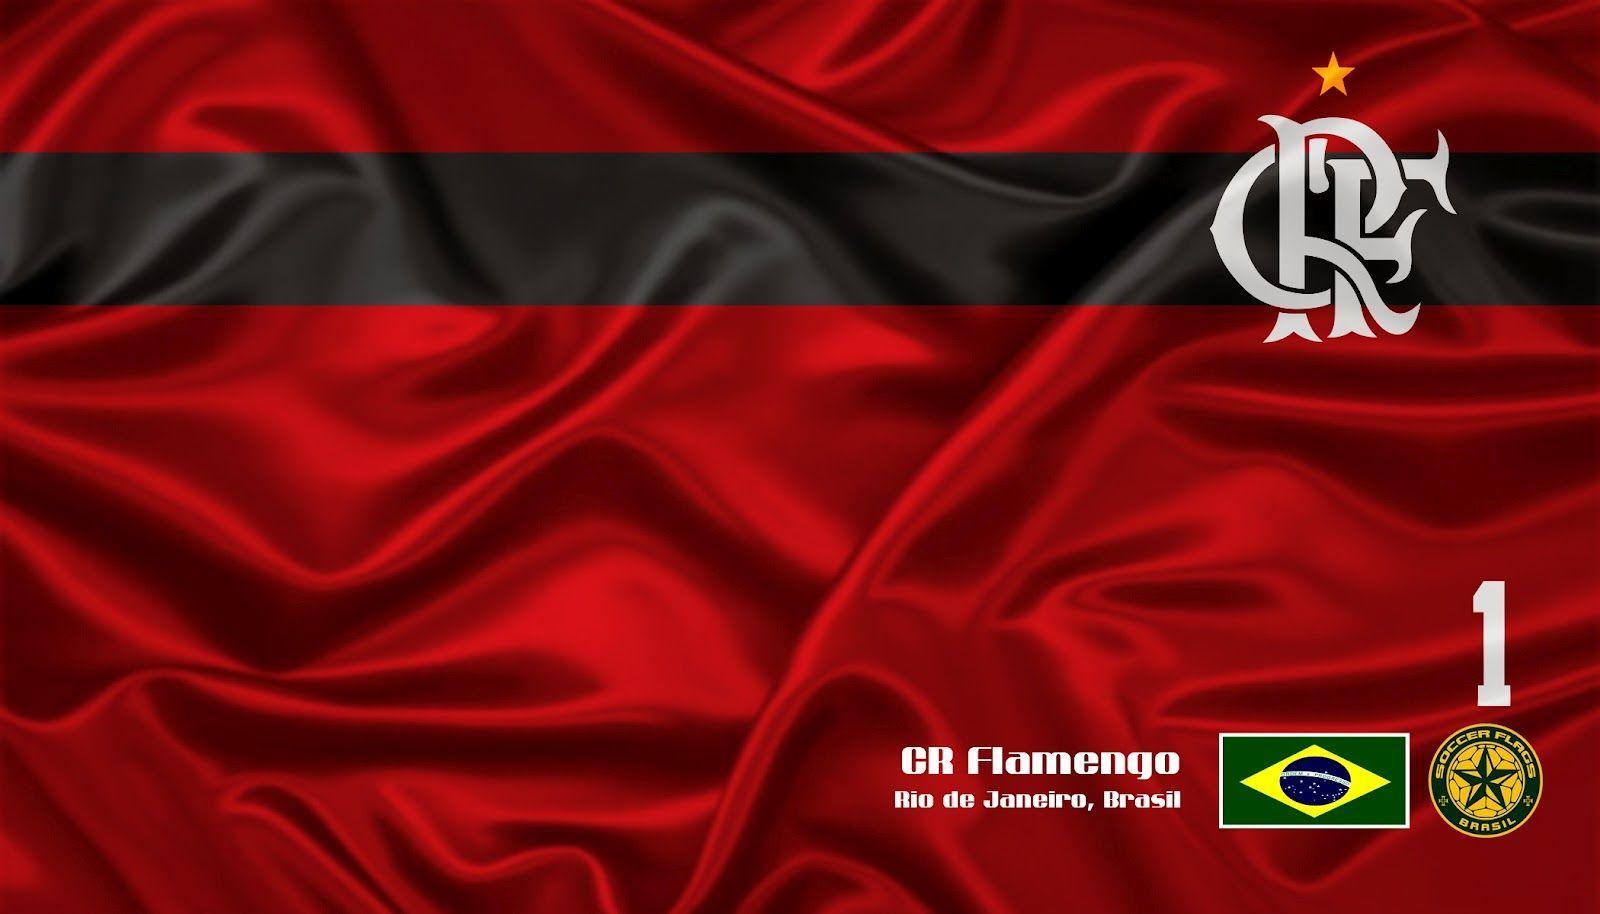 Confira Wallpaper do Flamengo para Computador ou Smartphone